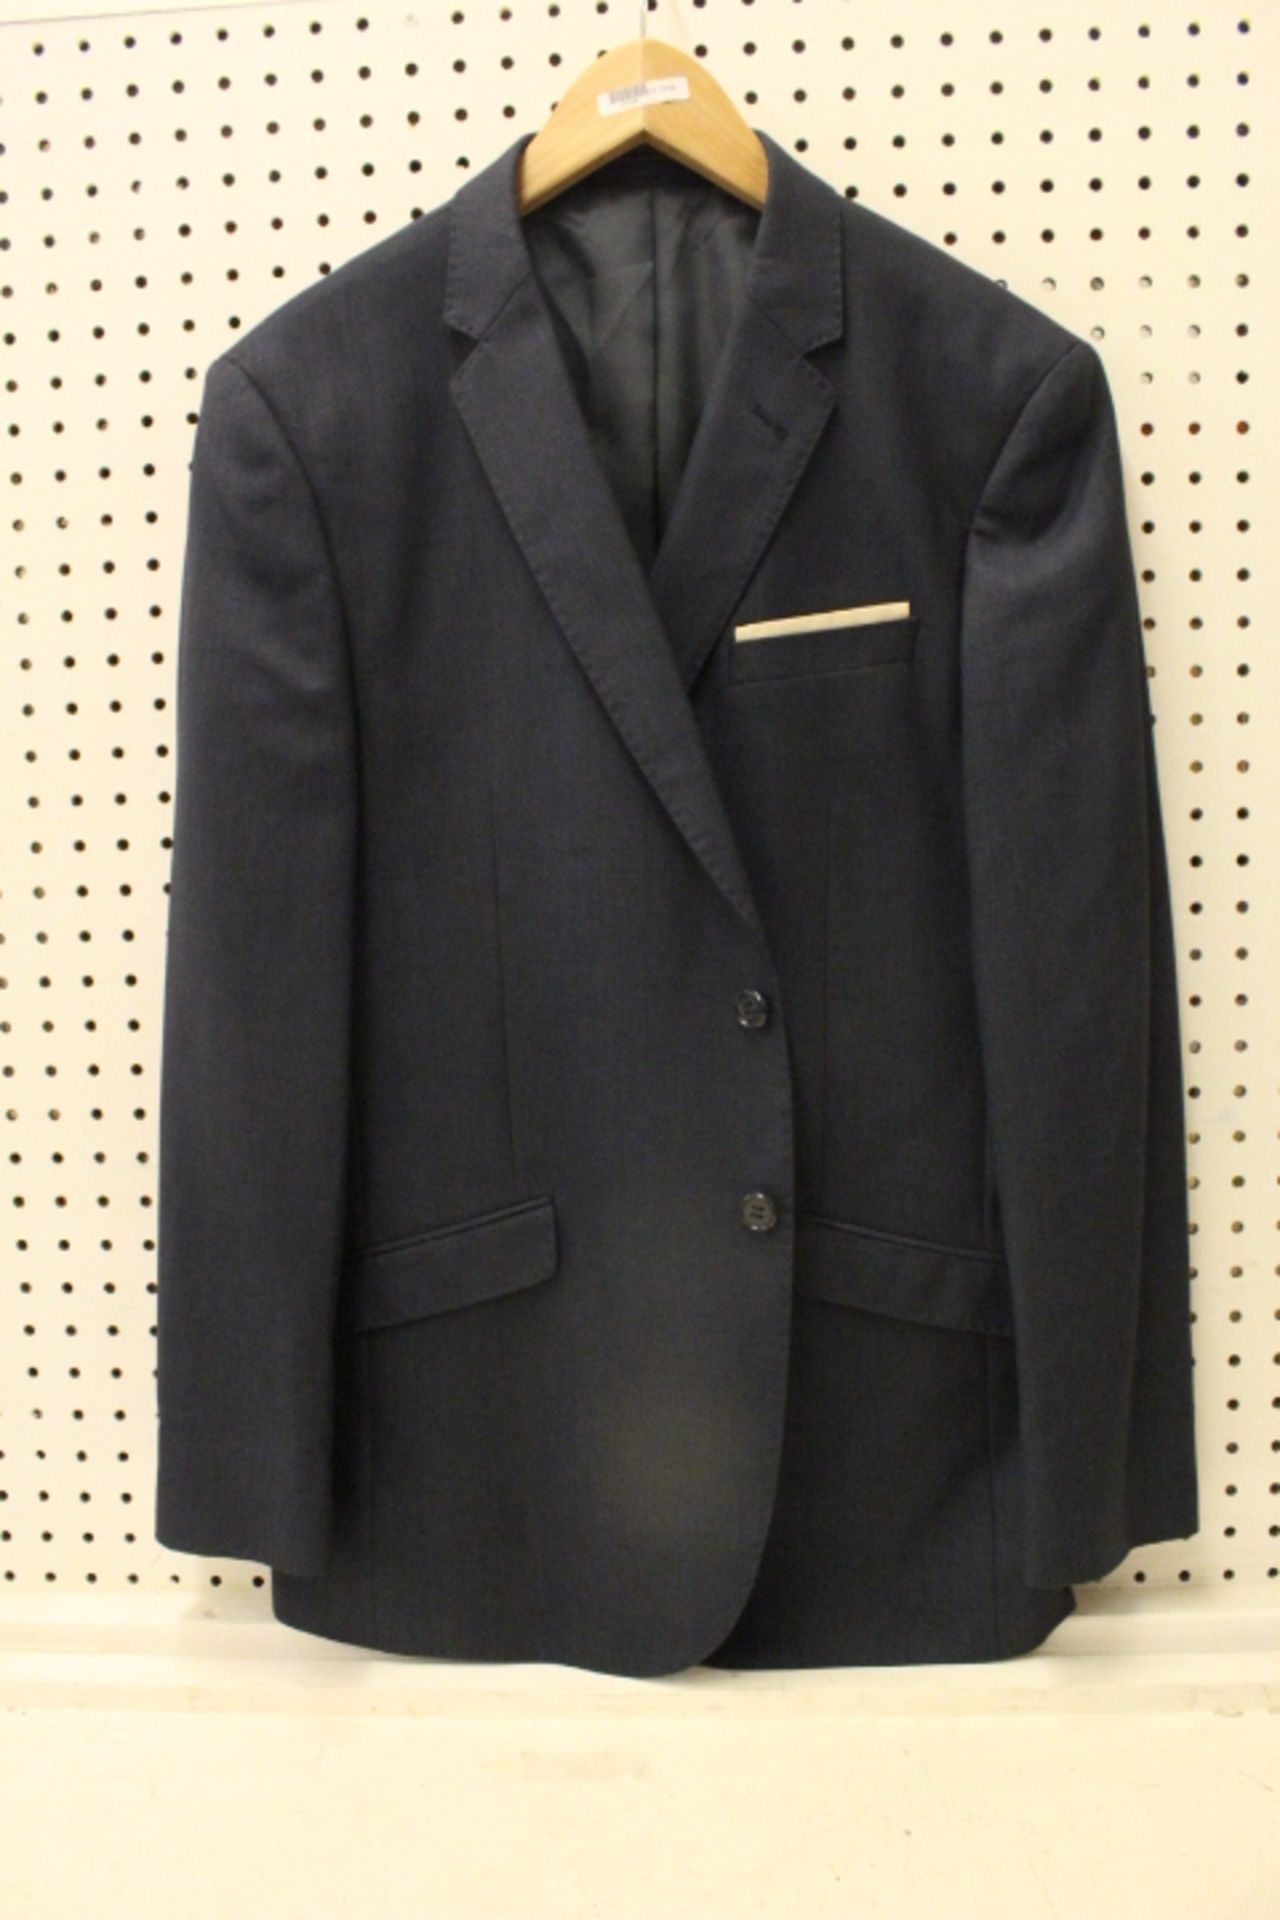 V Gents Butler & Webb Jacket Size 42 Short